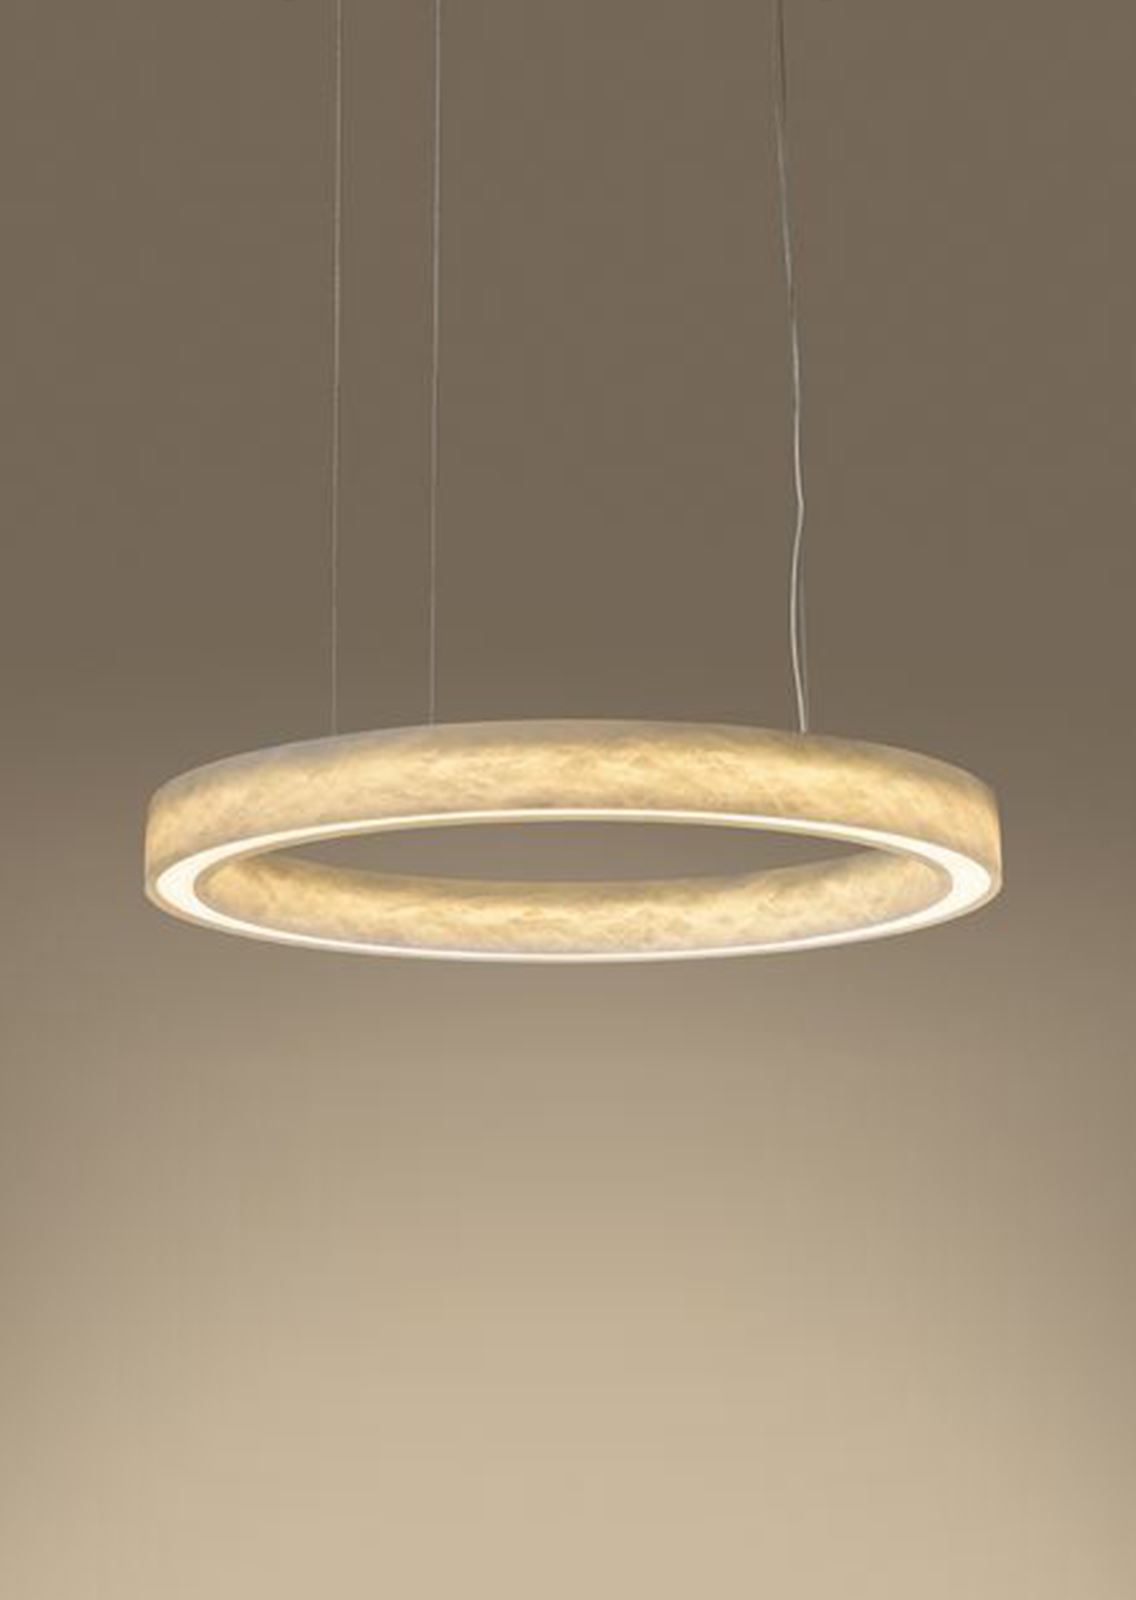 גופי תאורה מקטגוריית: מנורות תליה ,שם המוצר: טבעת אוניקס